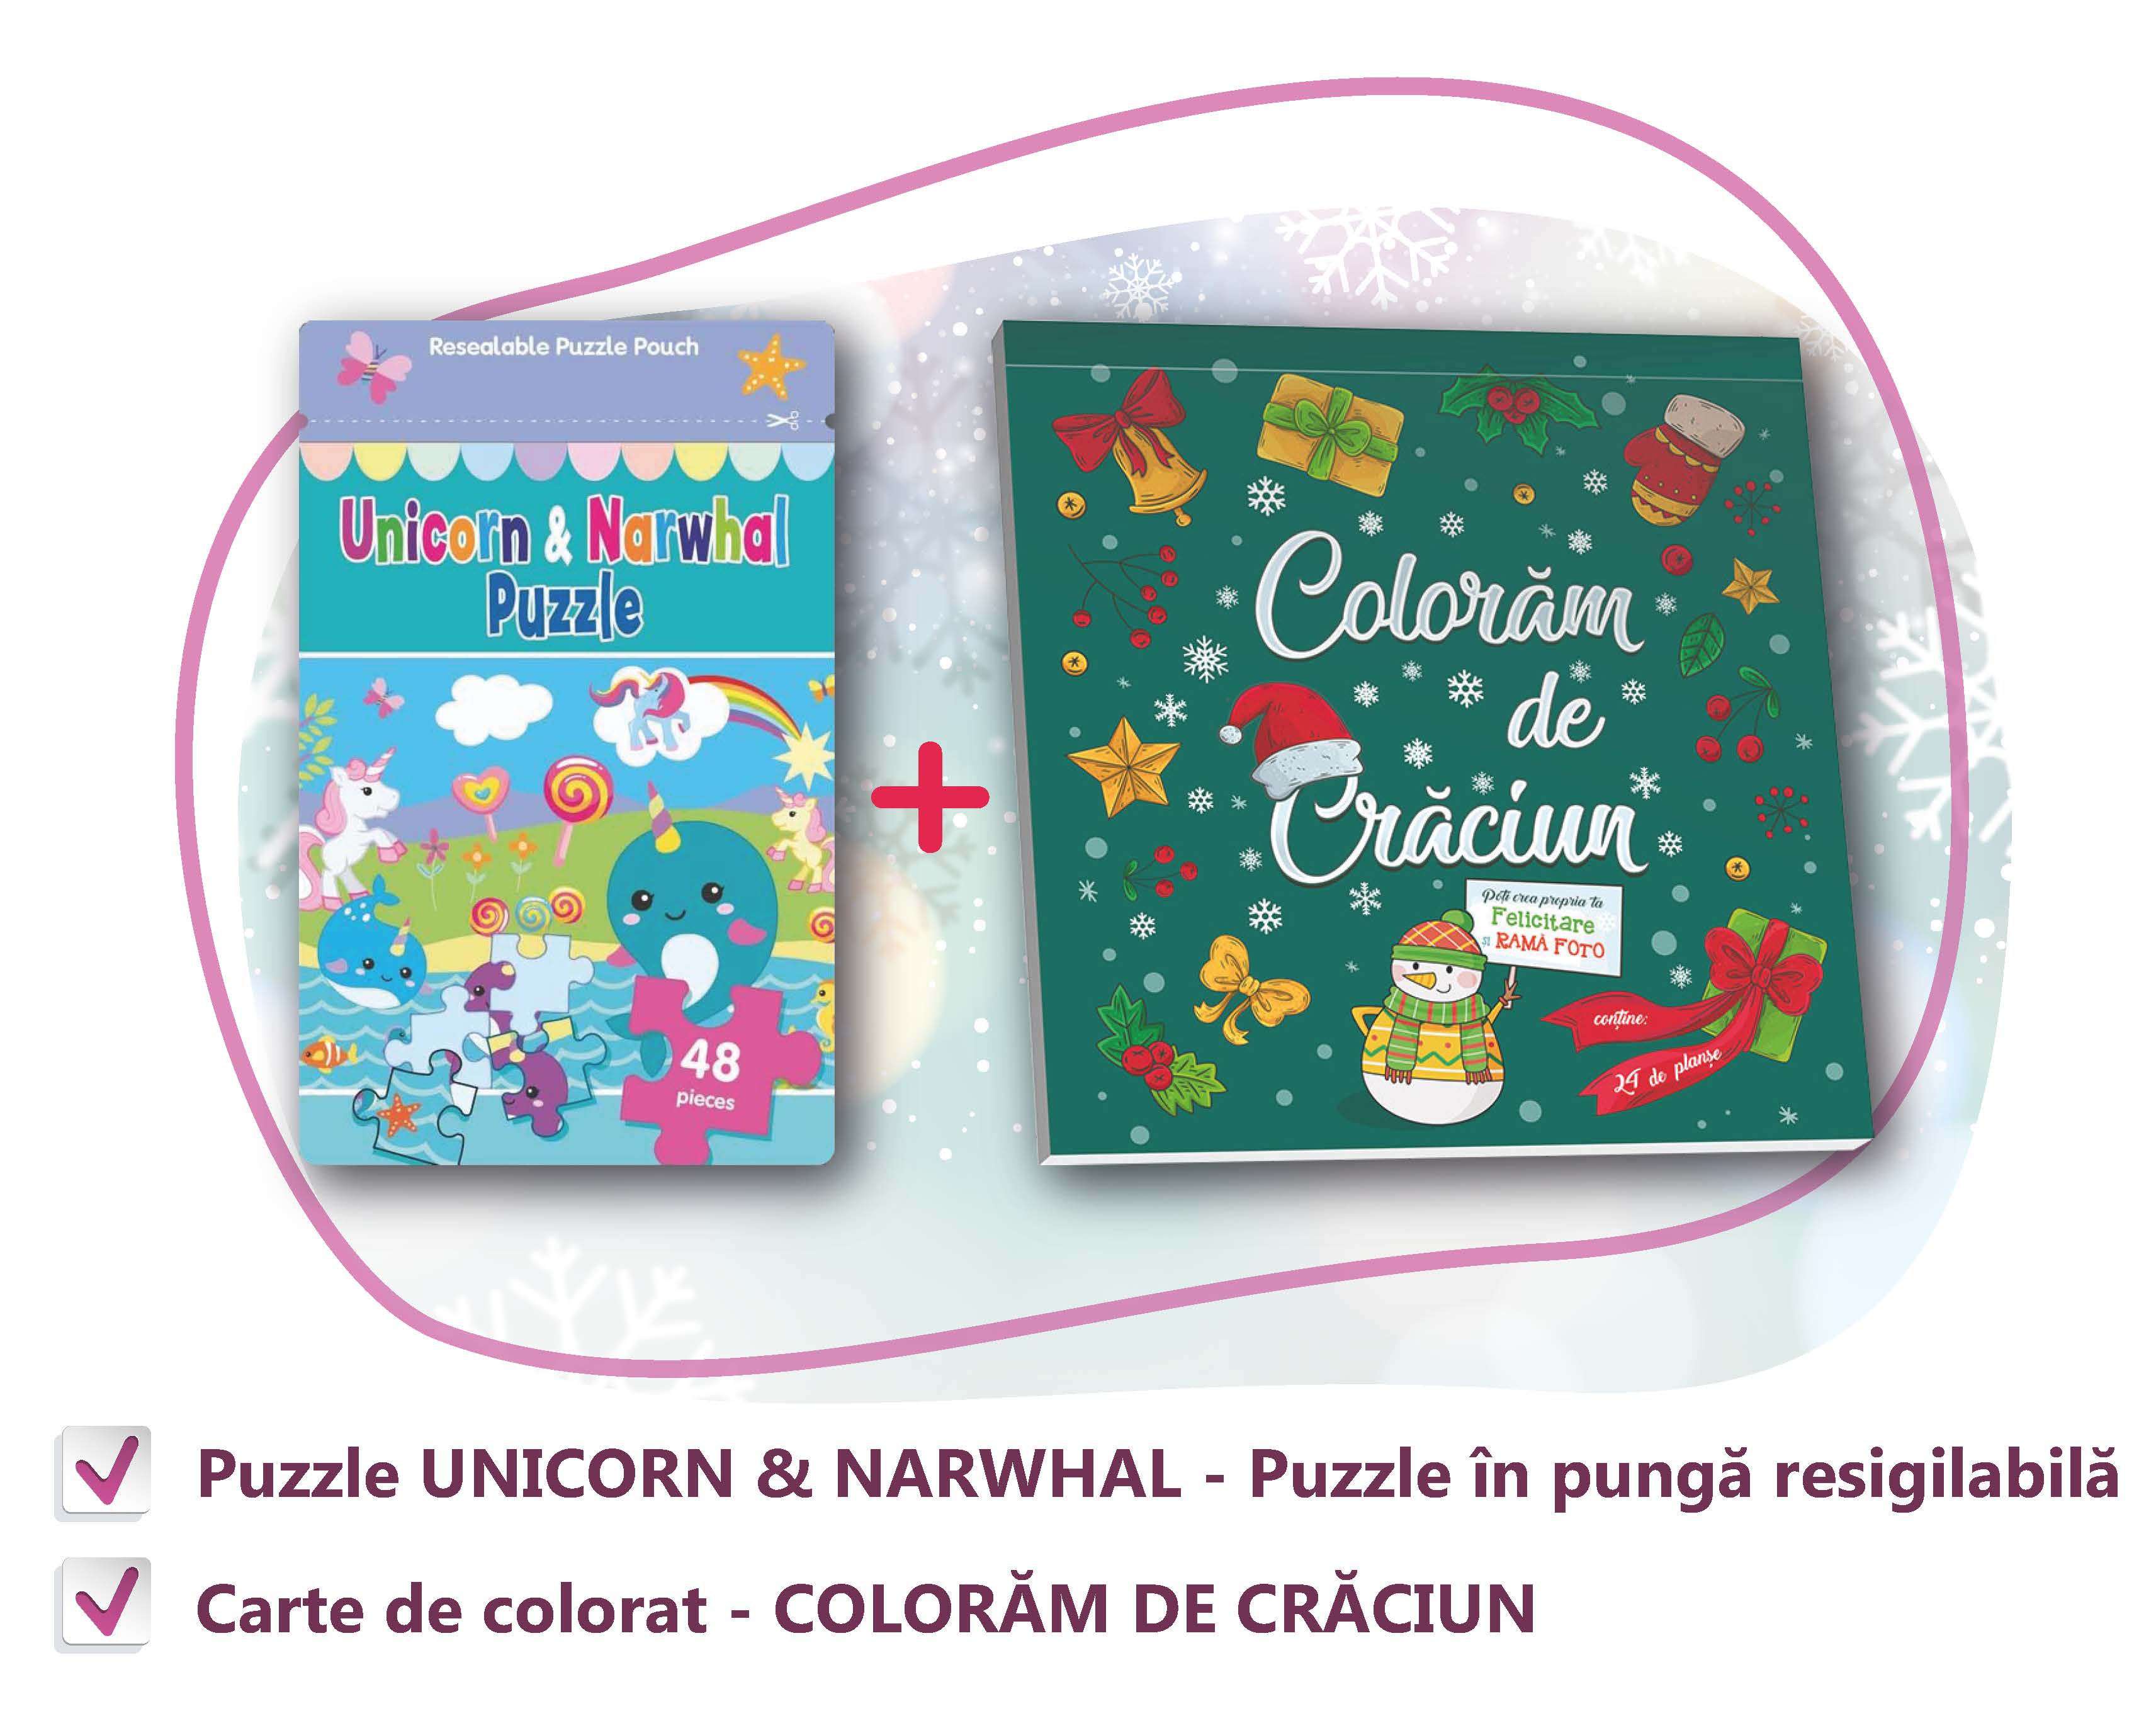 PACHET CADOU CRACIUN - CARTE DE COLORAT + PUZZLE UNICORN & Narwhal